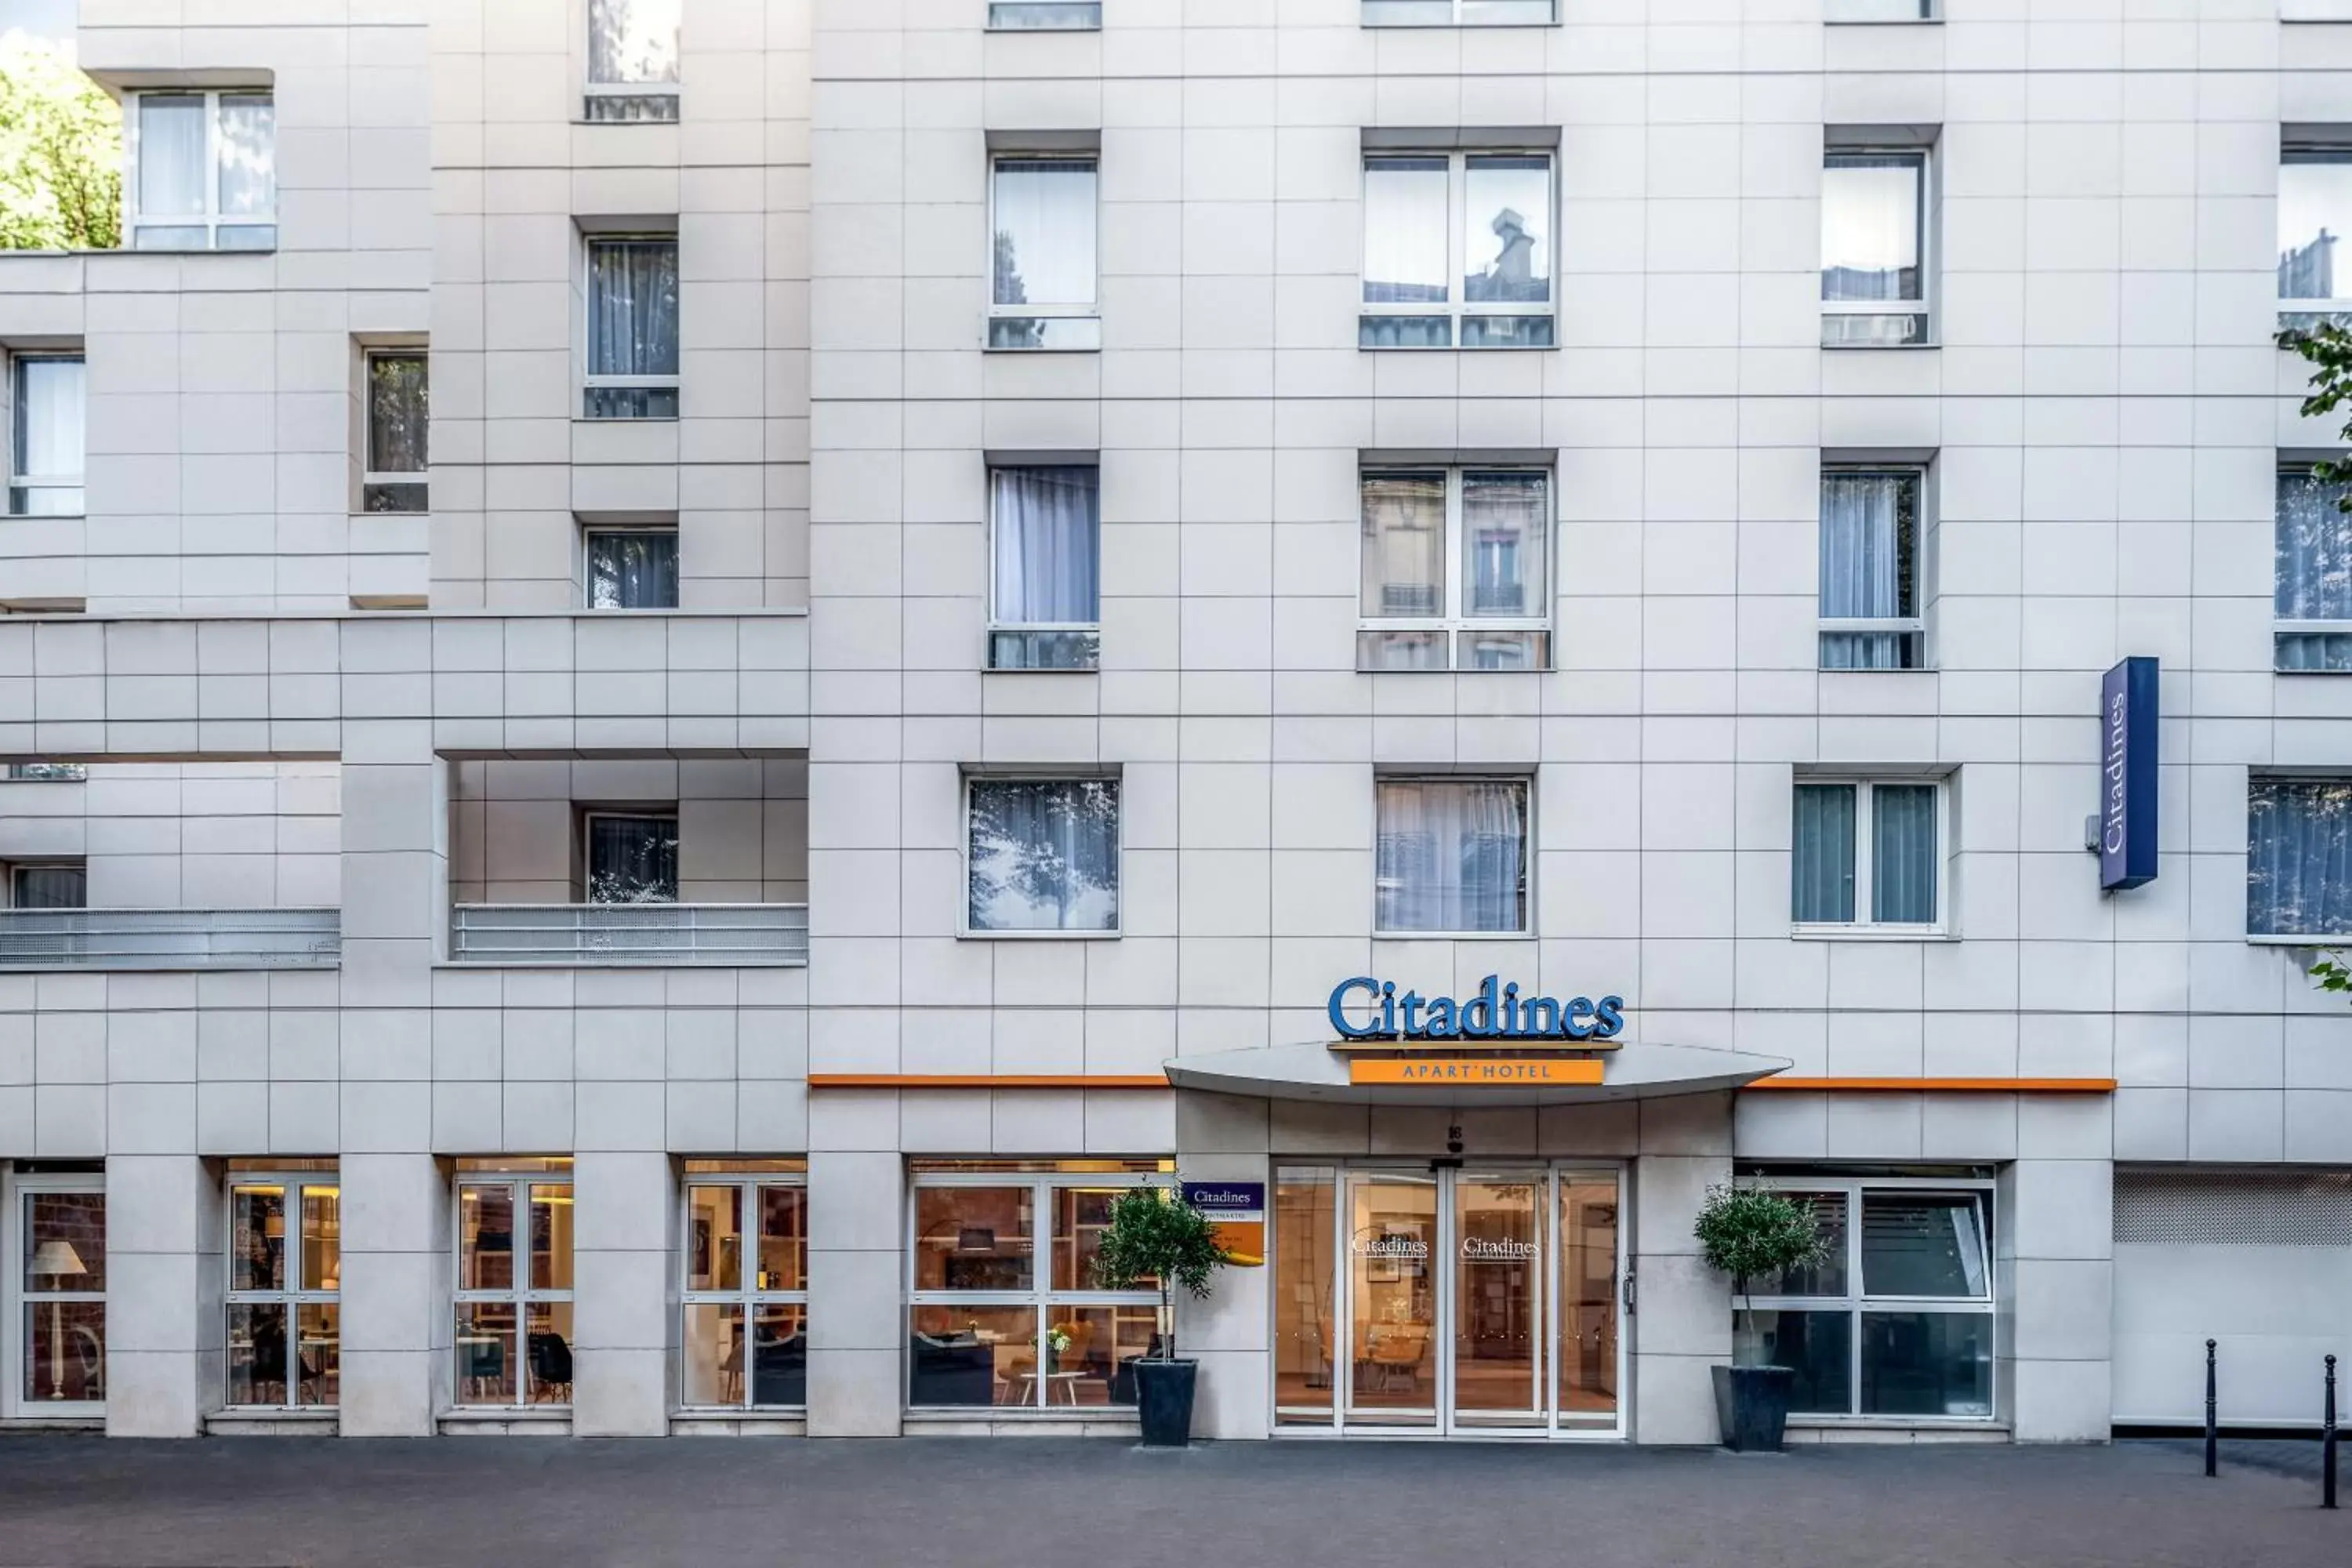 Property building, Facade/Entrance in Citadines Montmartre Paris